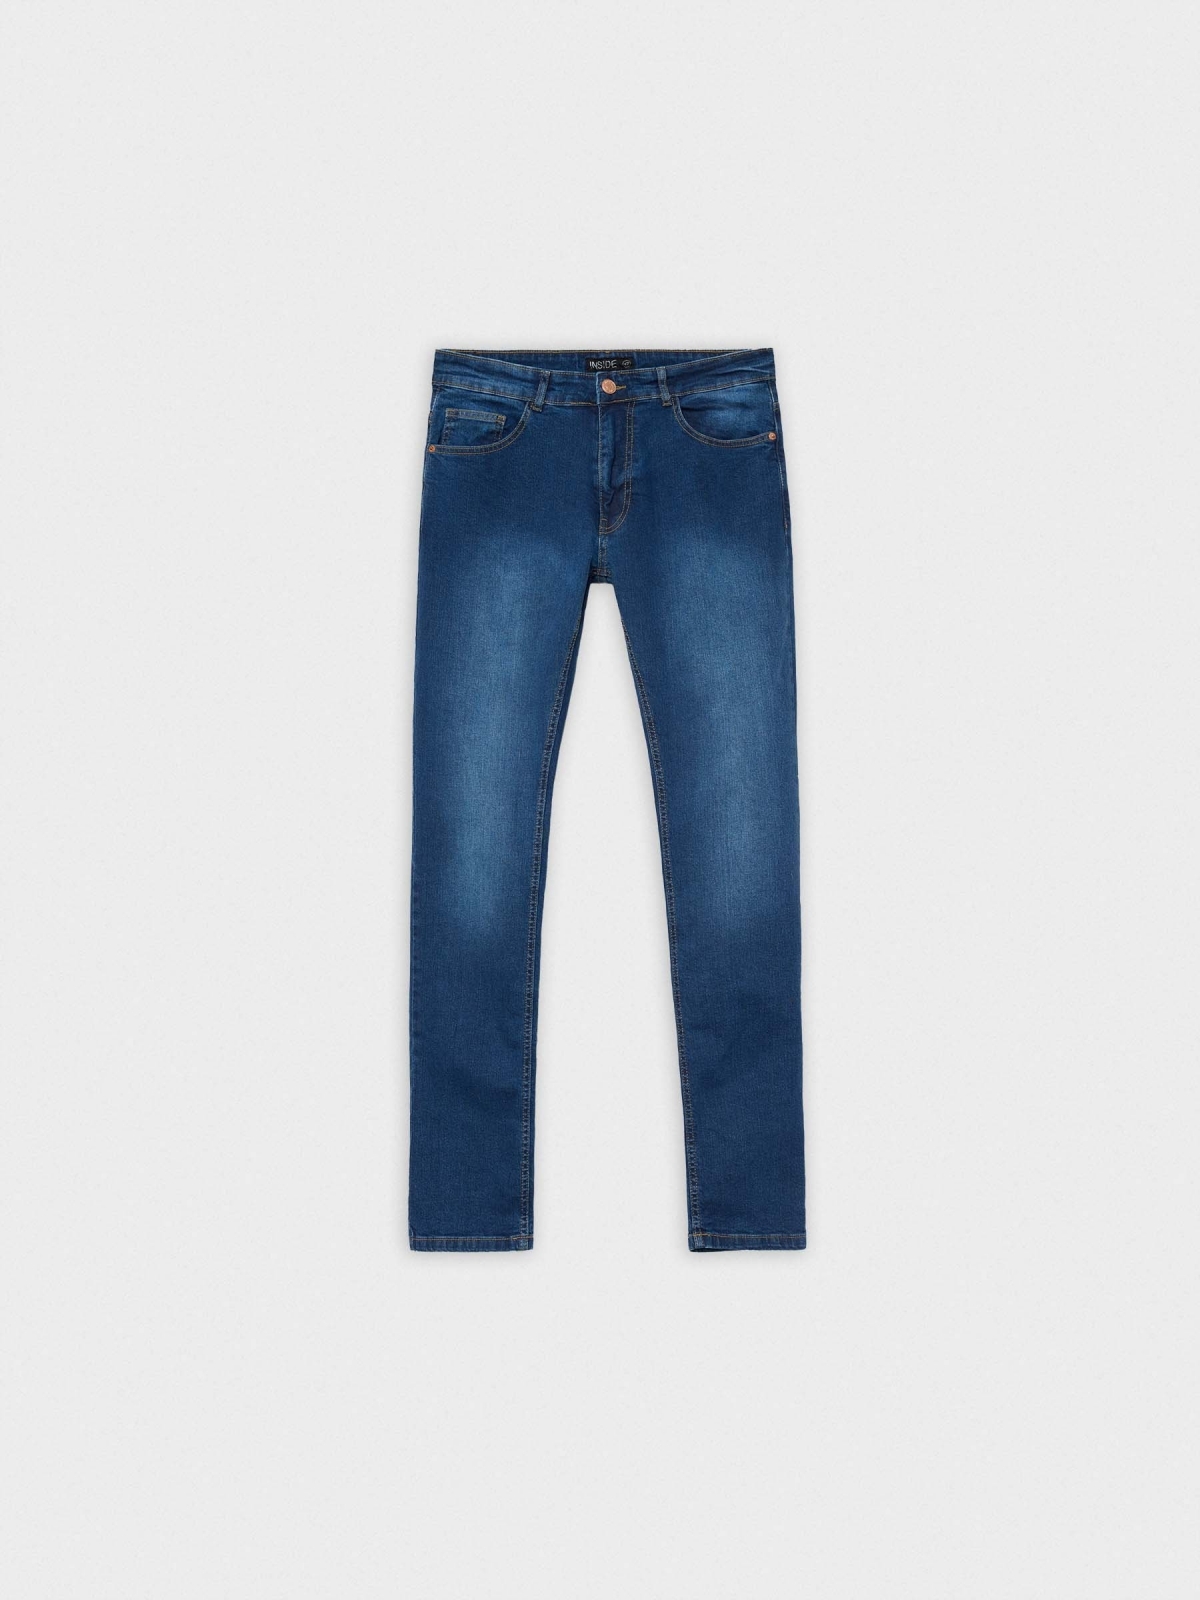  Regular basic jeans blue